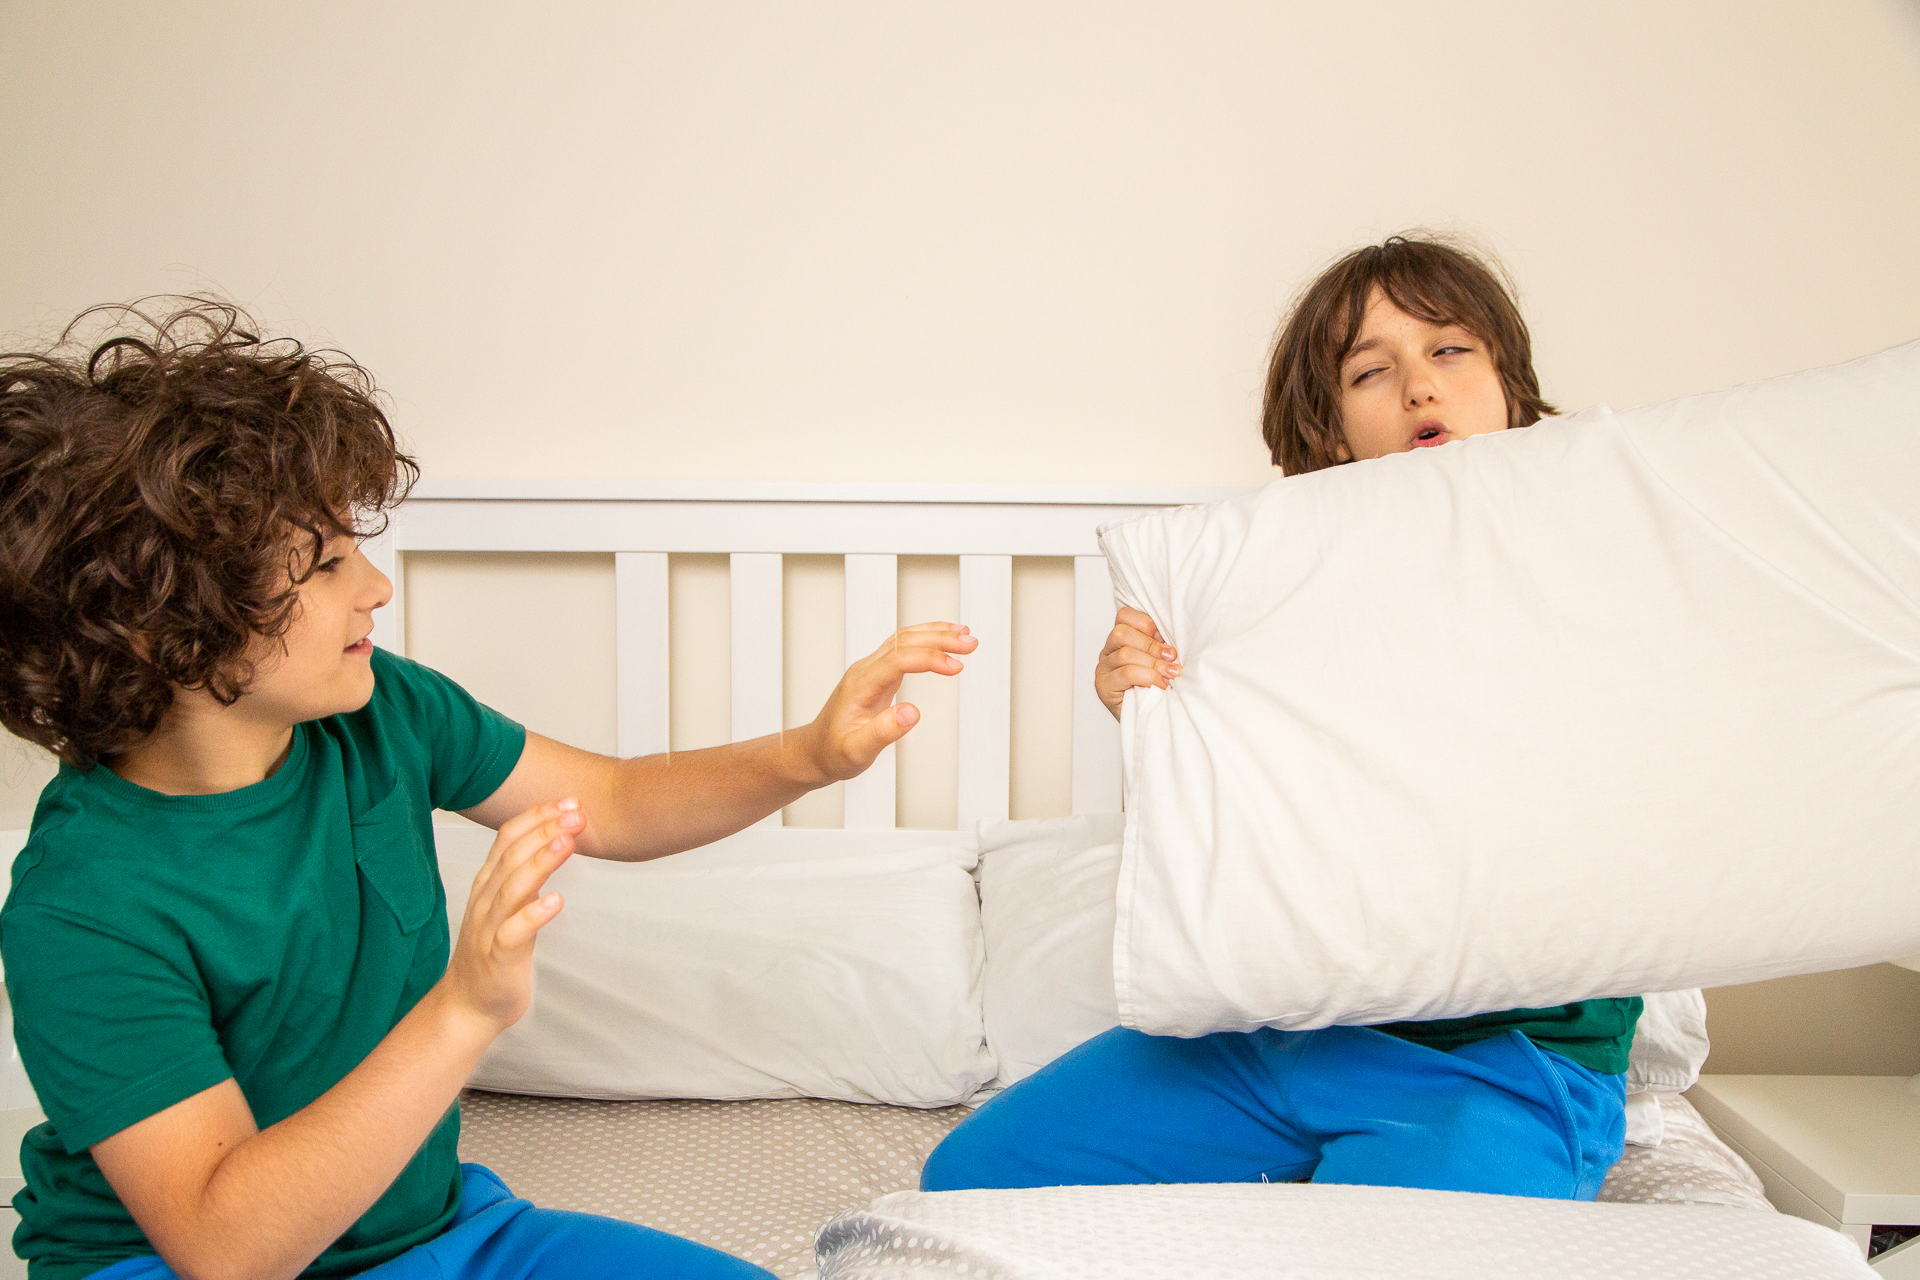 kids pillow fighting-Honest Mum